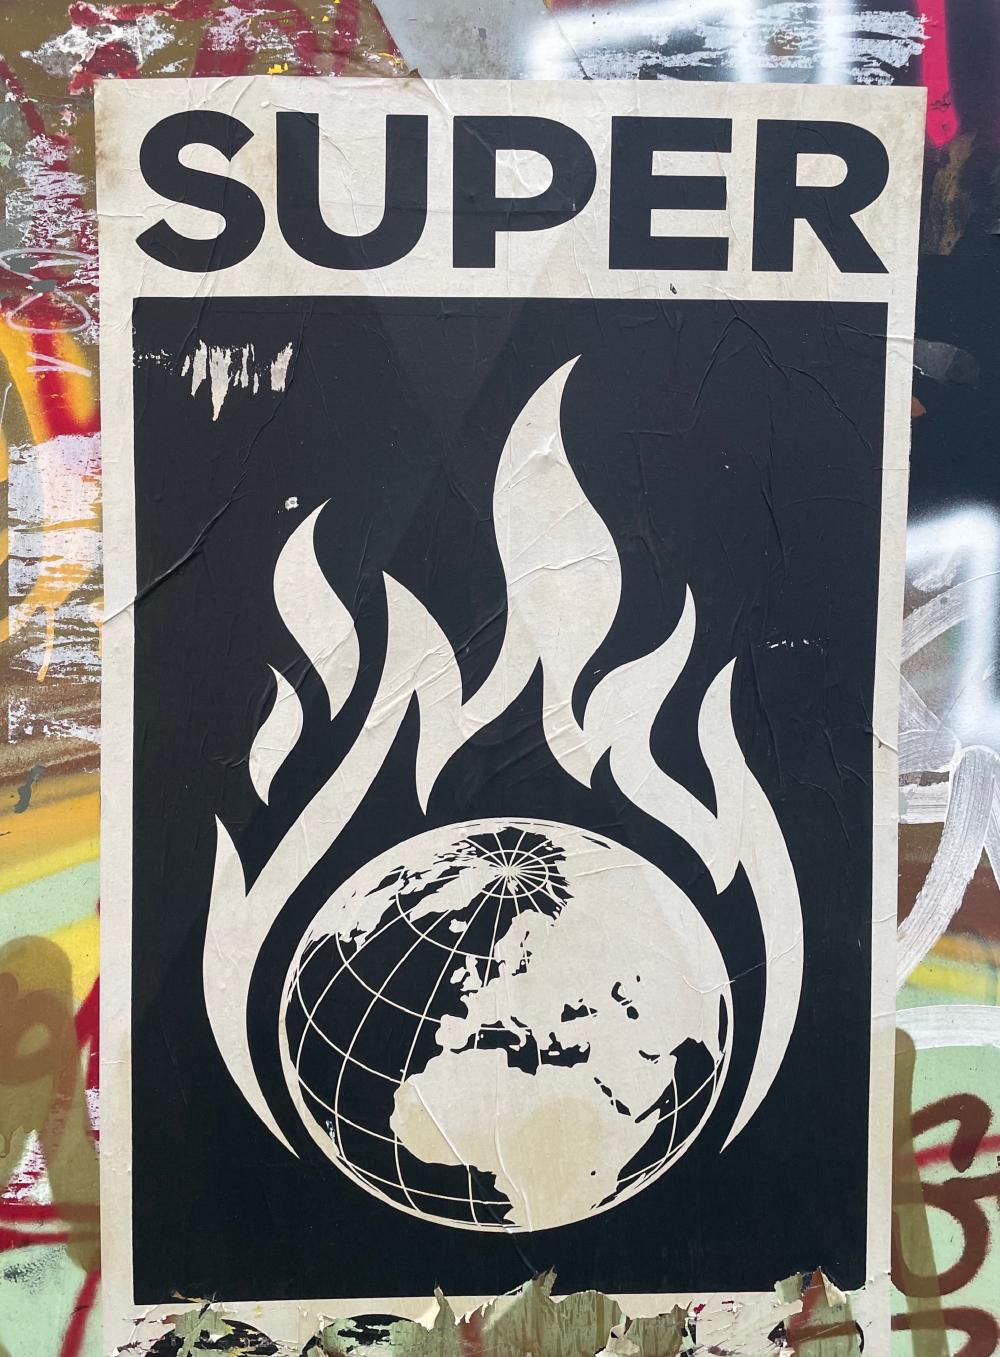 A burning globe motif, title Super